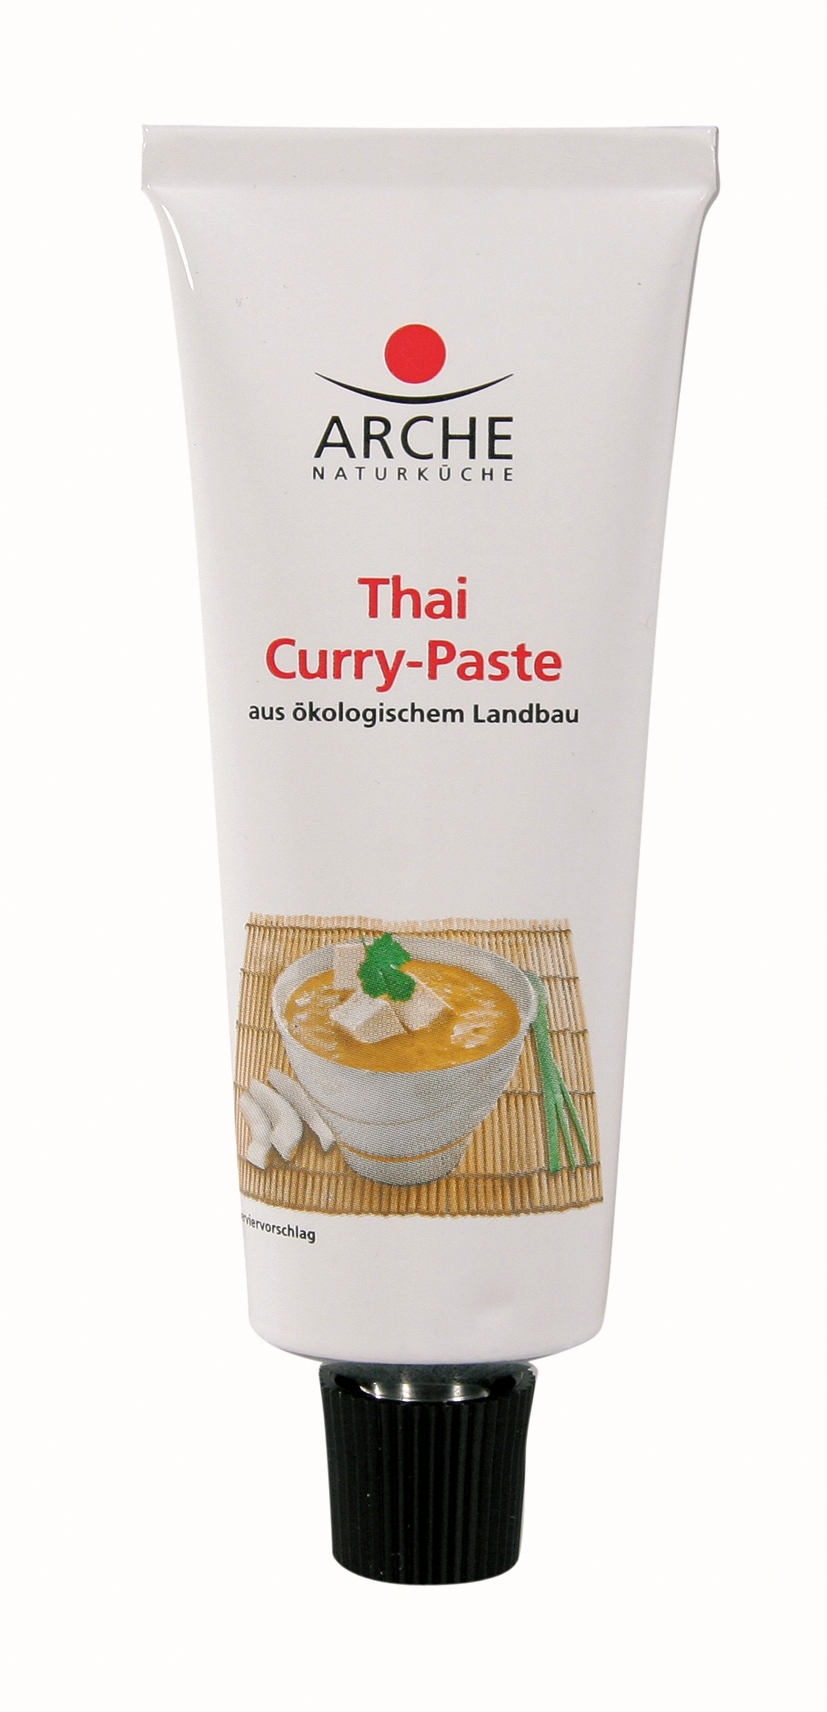 Thai Curry-Paste